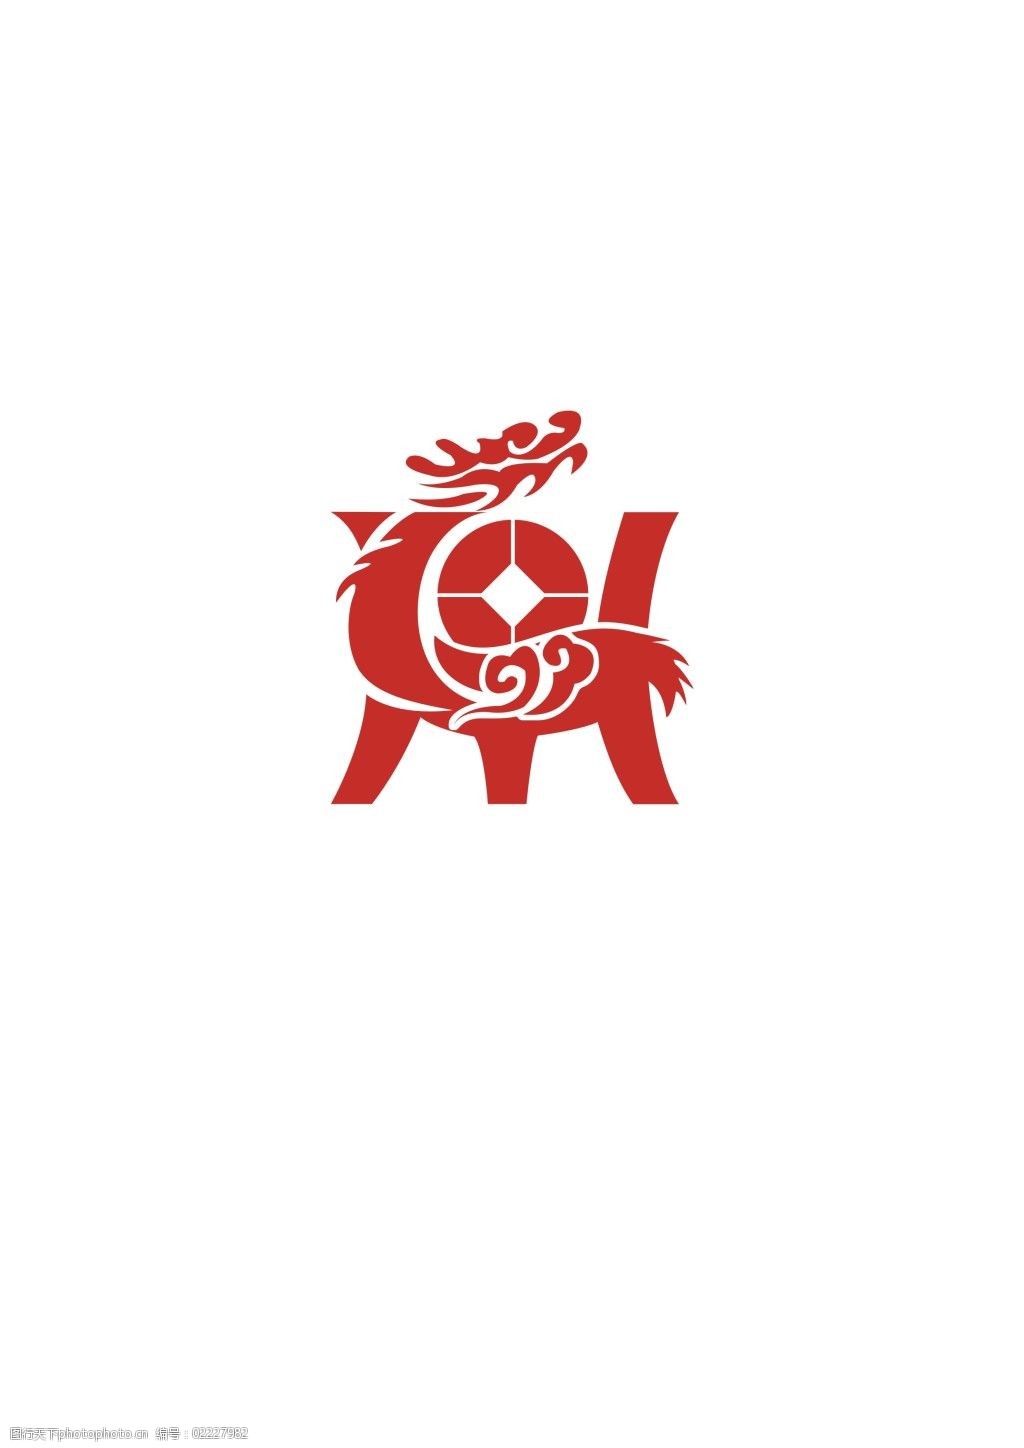 设计图库 标志图标 企业logo标志    上传: 2015-5-13 大小: 8.